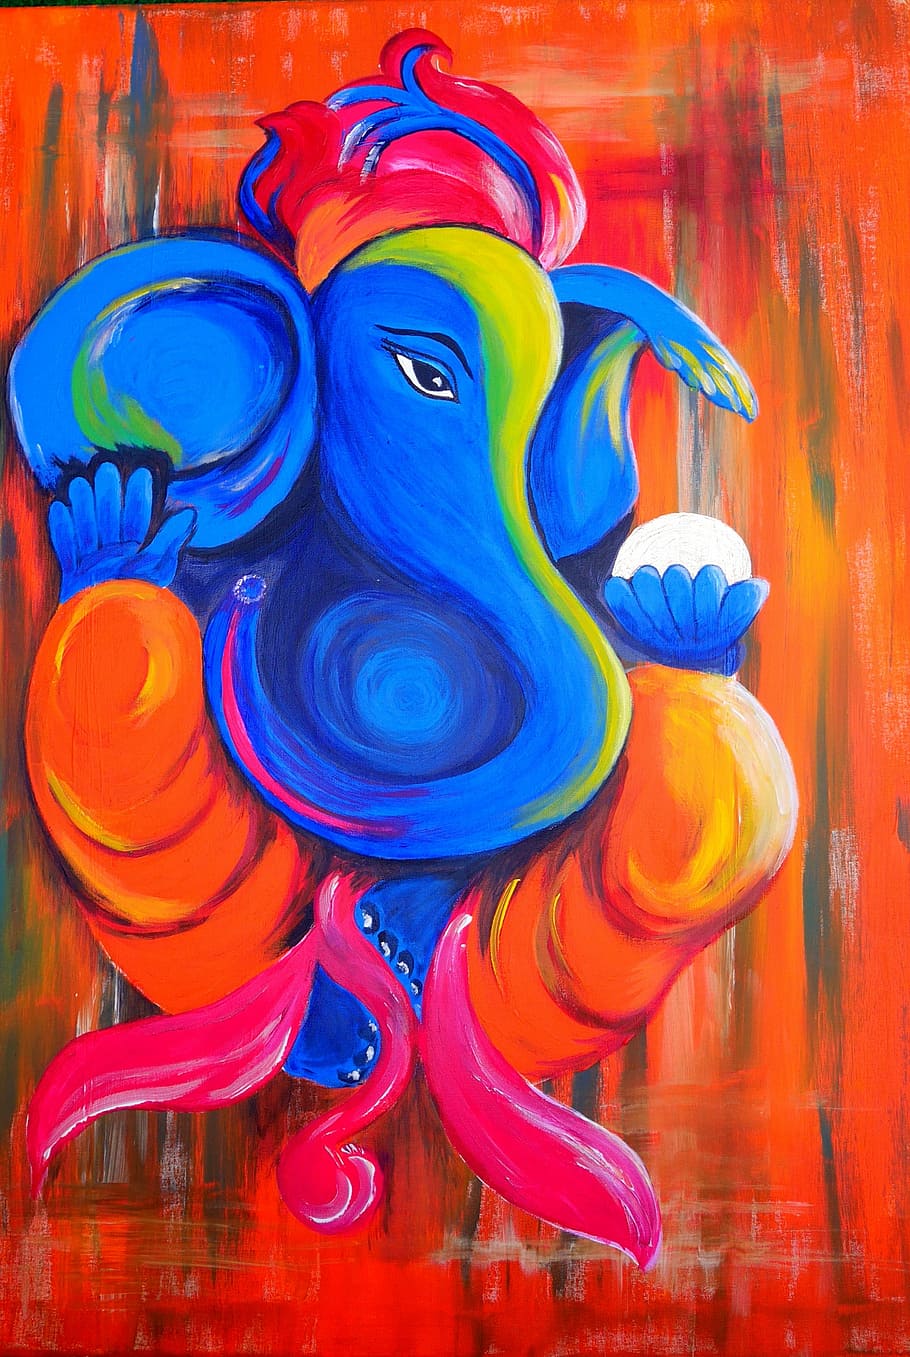 blue, yellow, red, orange, elephant painting, elephant, ganesha, god, deity, india